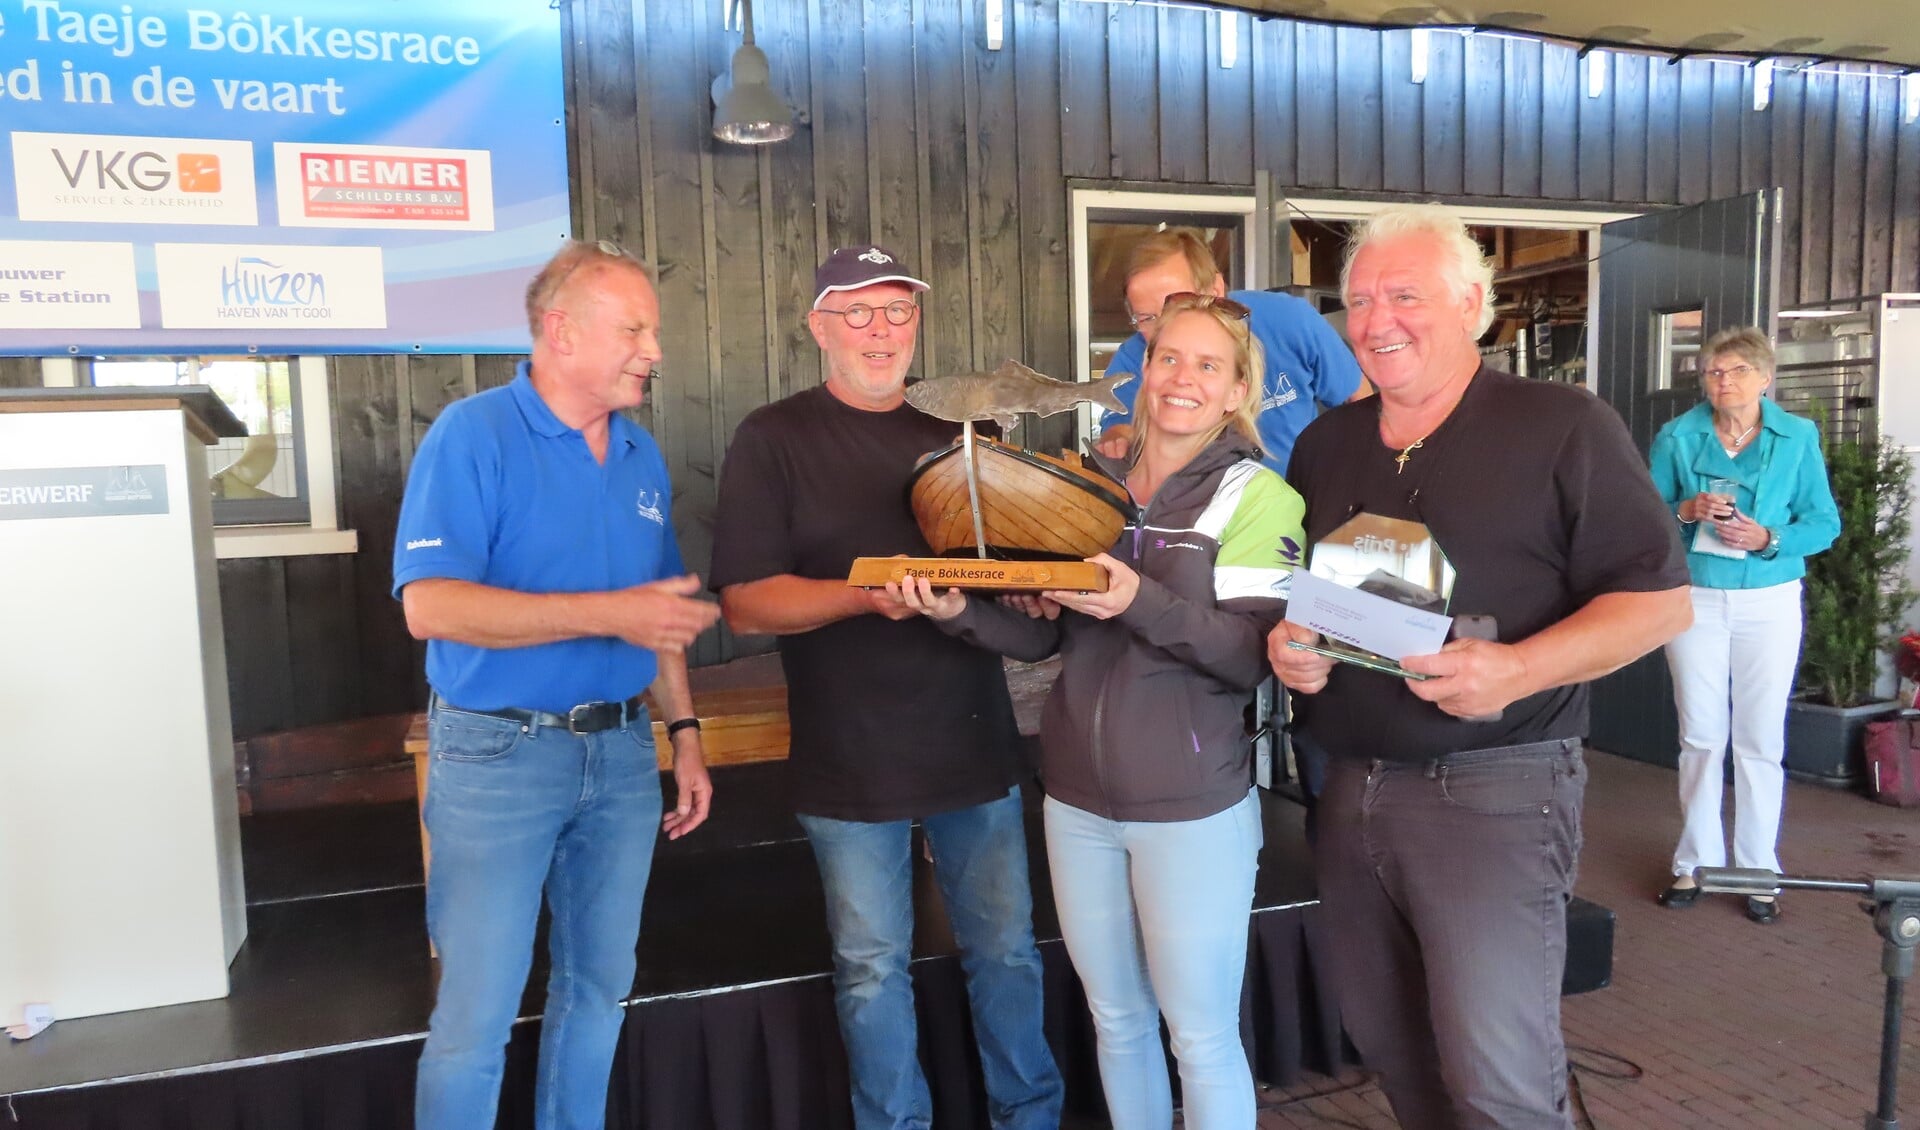 Burgemeester Sicko Heldoorn (links) reikt de 1e prijs en wisseltrofee uit aan croonwolter&dros|TBI 5.